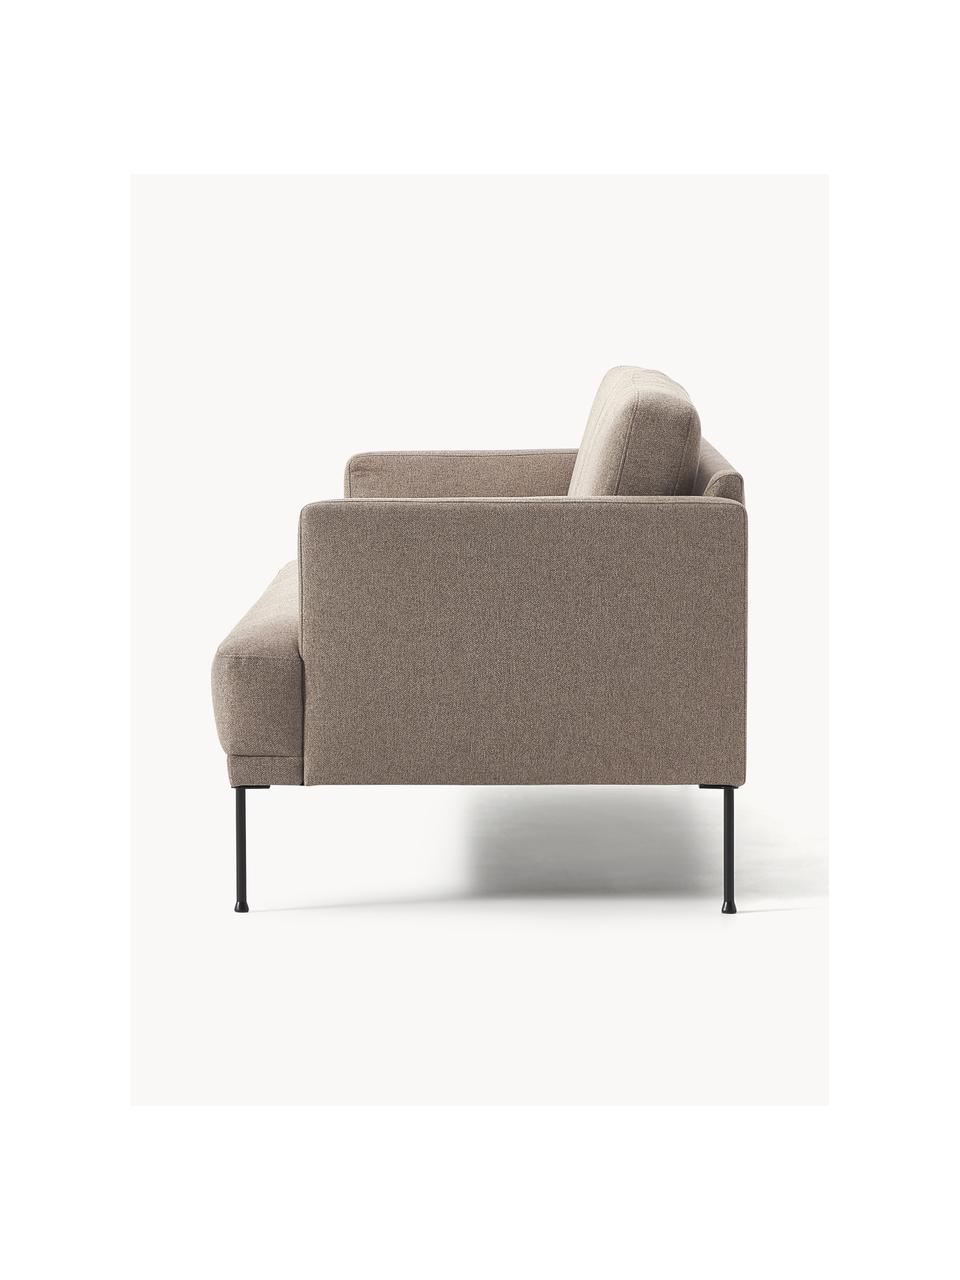 Sofa Fluente (2-Sitzer), Bezug: 100% Polyester 115.000 Sc, Gestell: Massives Kiefernholz, Füße: Metall, pulverbeschichtet, Webstoff Taupe, B 166 x T 85 cm